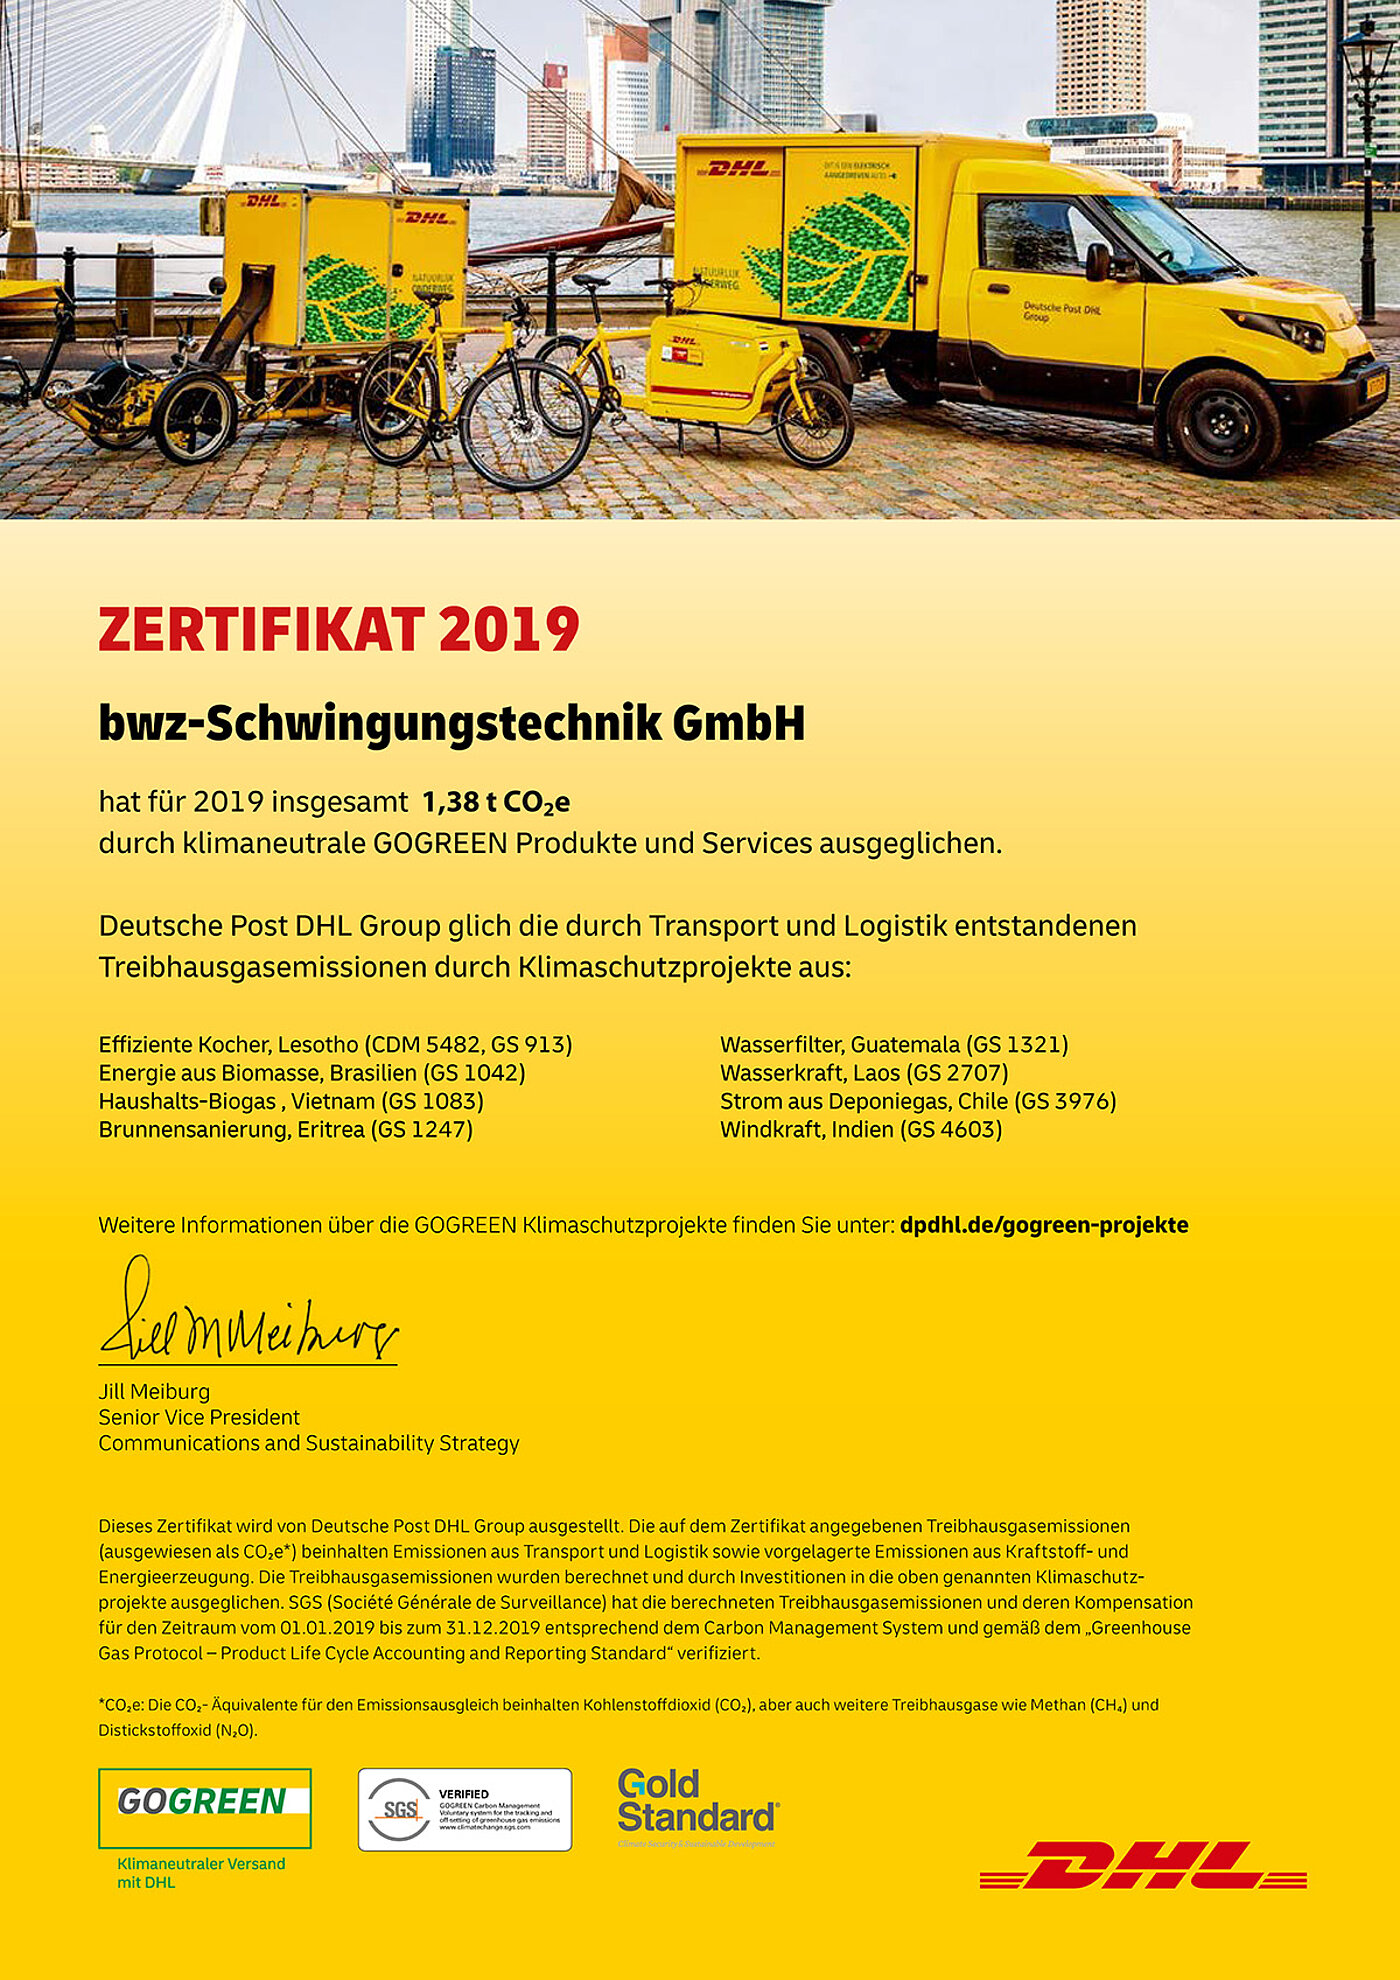 bwz Schwingungstechnik 1,38t CO²e-Einsparung 2019 durch DHL GOGREEN